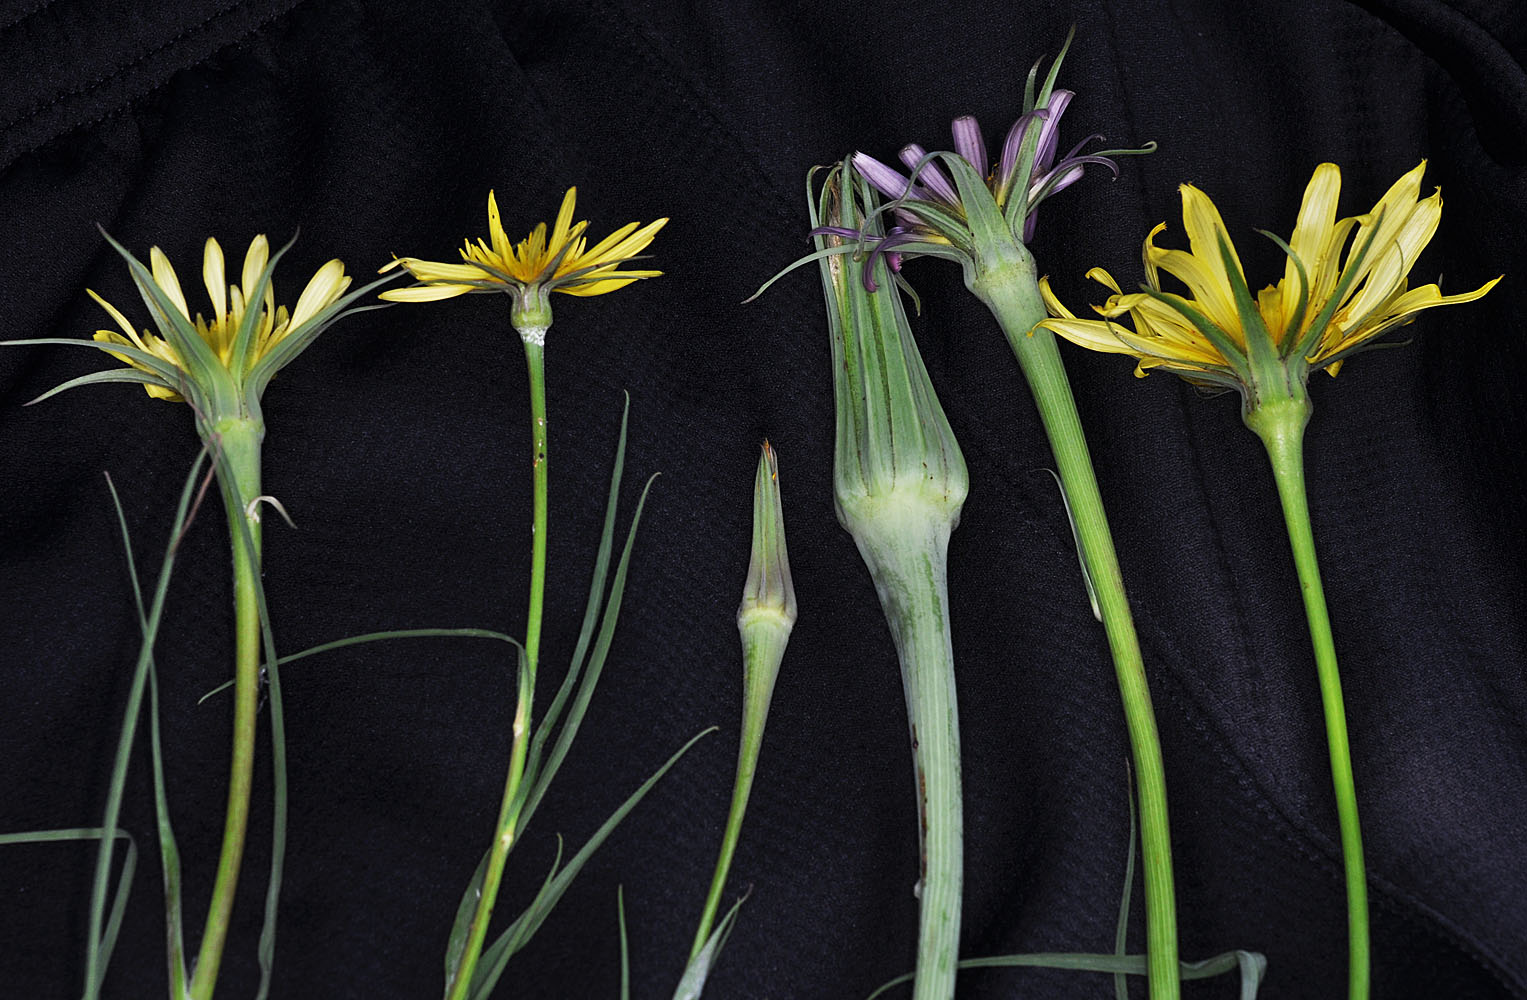 Flora of Eastern Washington Image: Tragopogon dubius